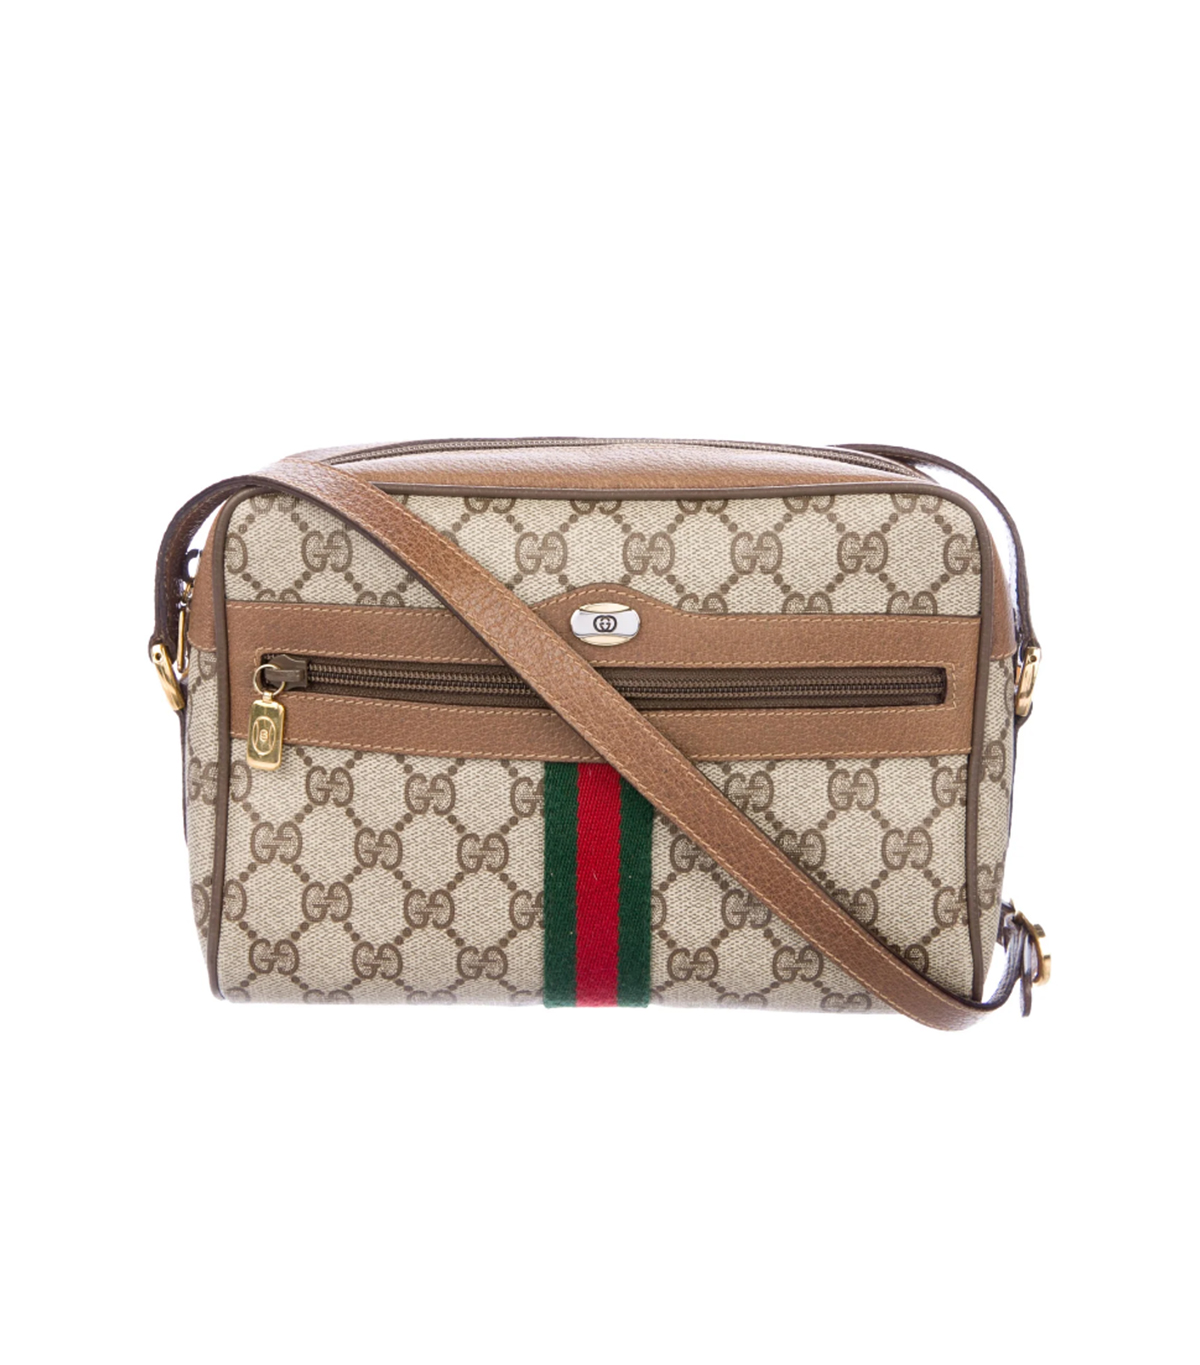 22 Classic Gucci Handbags Under $1000 